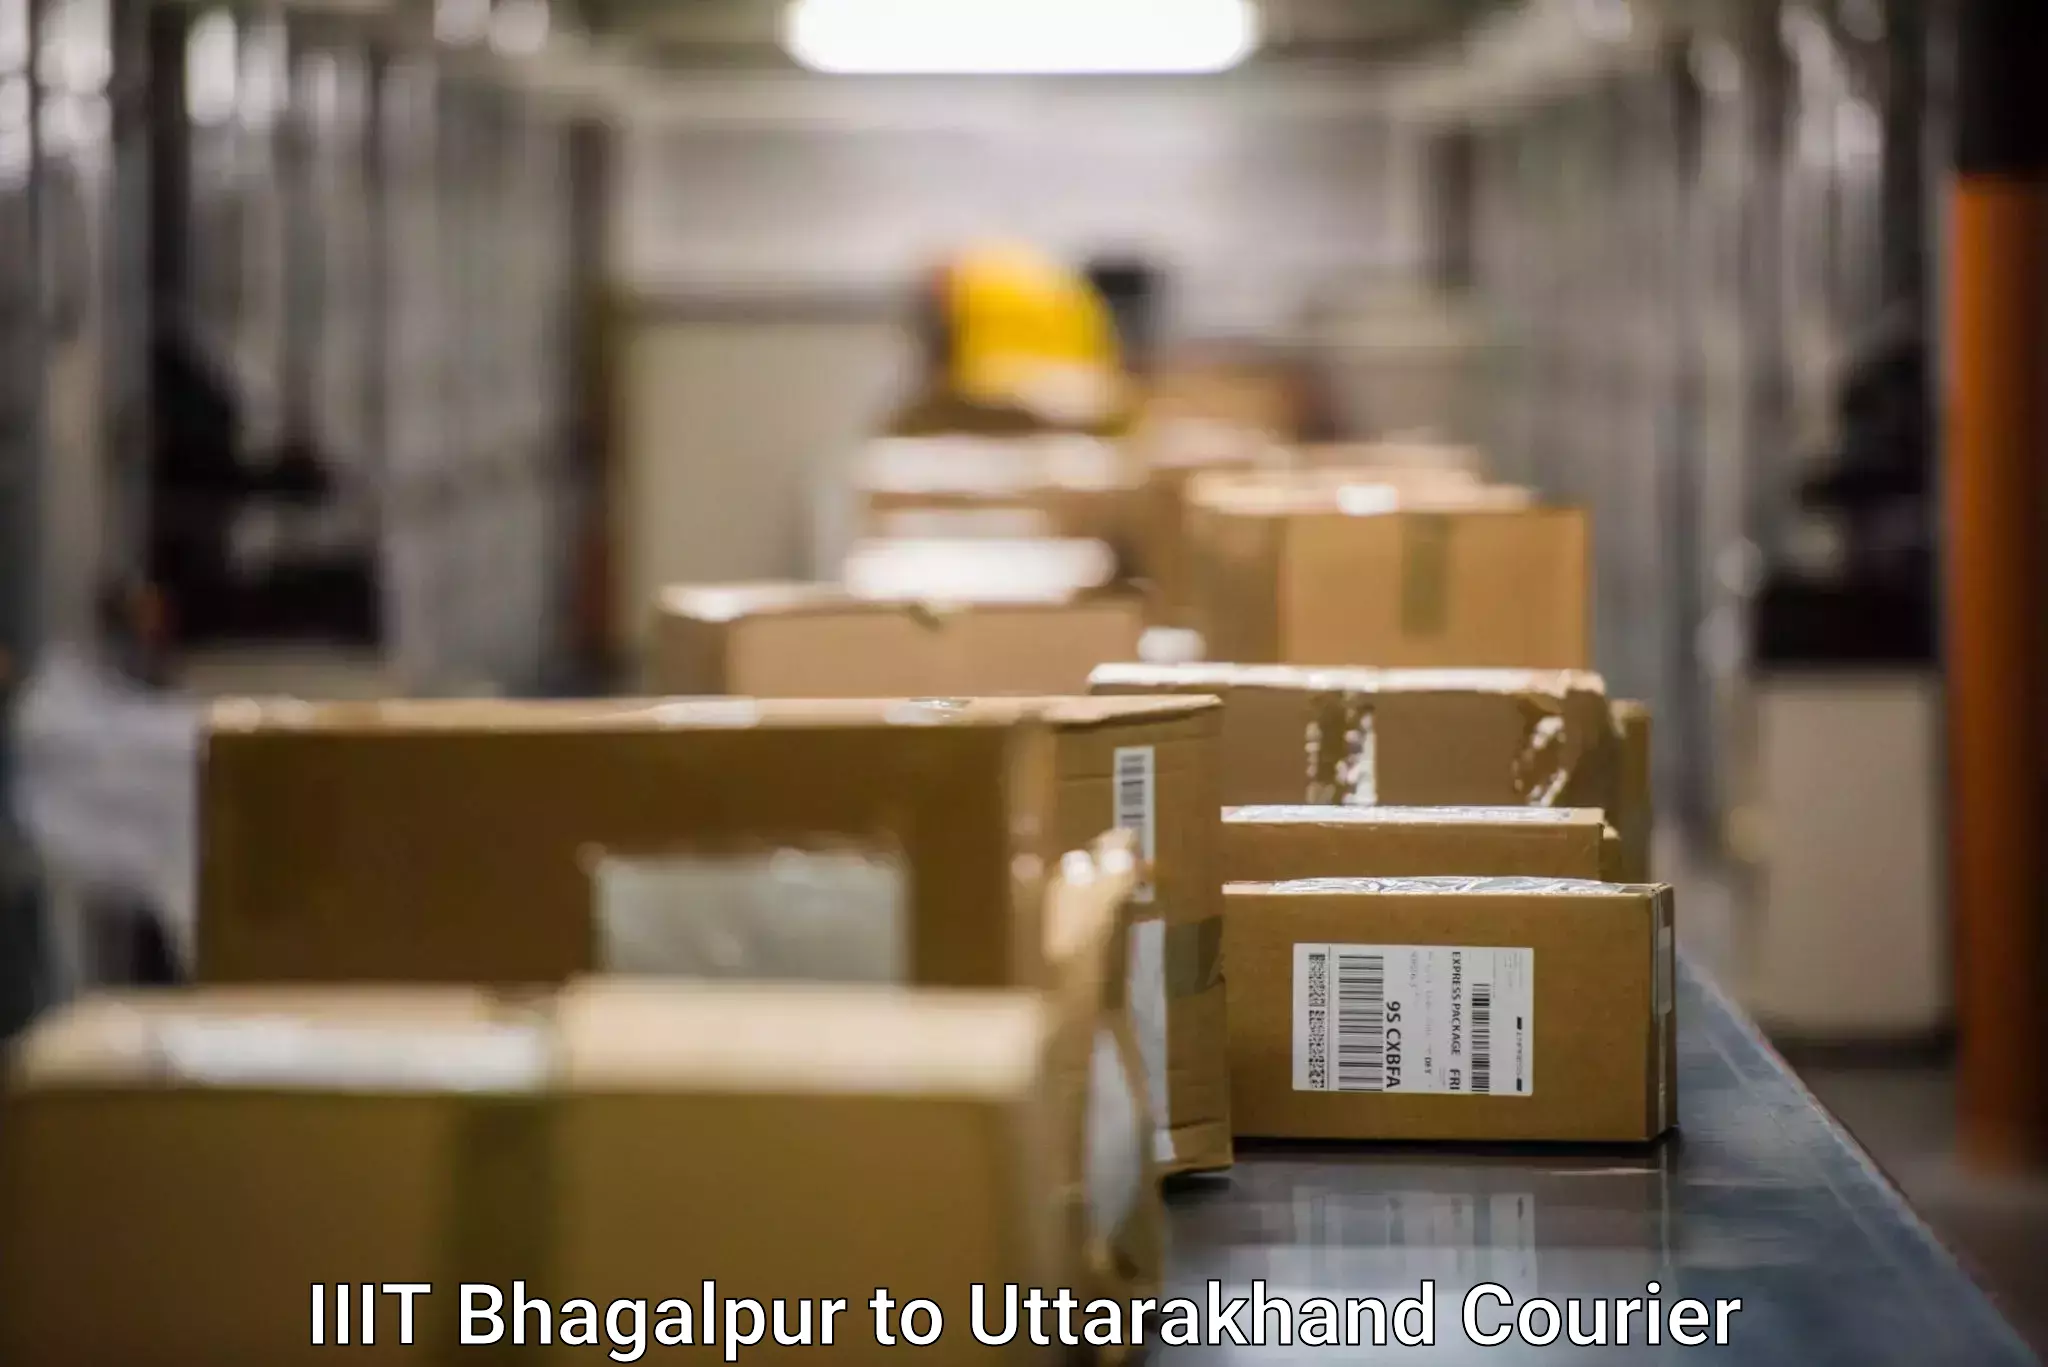 User-friendly delivery service IIIT Bhagalpur to Gumkhal